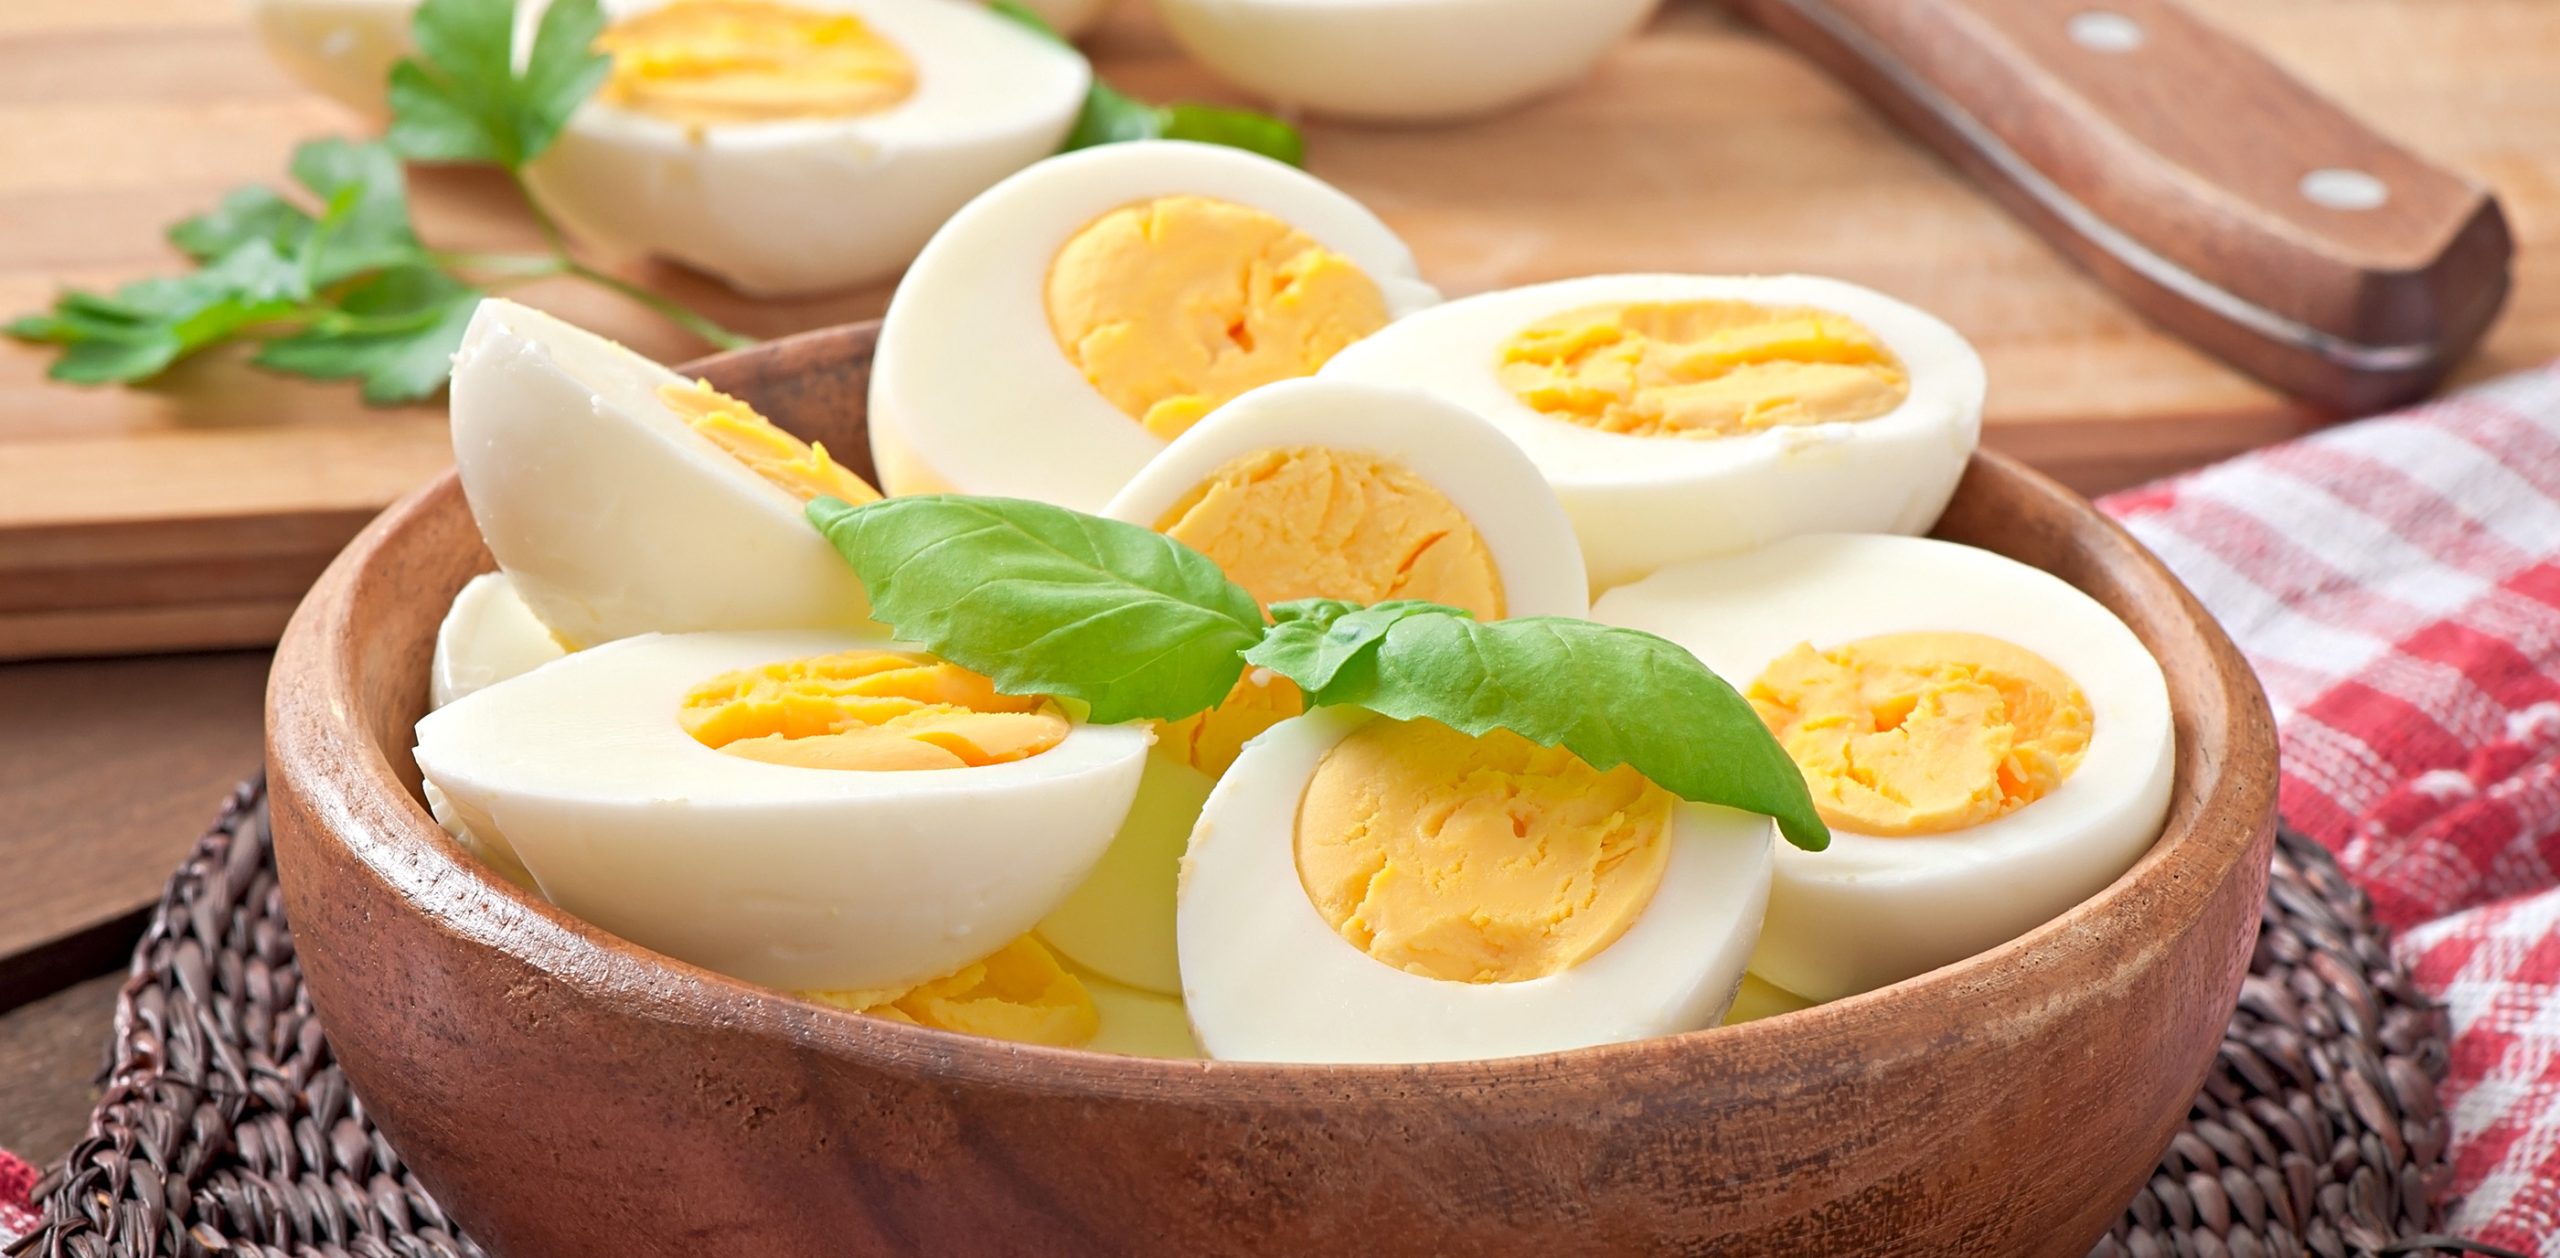 Τα γνωρίζατε: – Αυτά είναι τα οφέλη της καθημερινής κατανάλωσης βραστού αυγού (βίντεο)